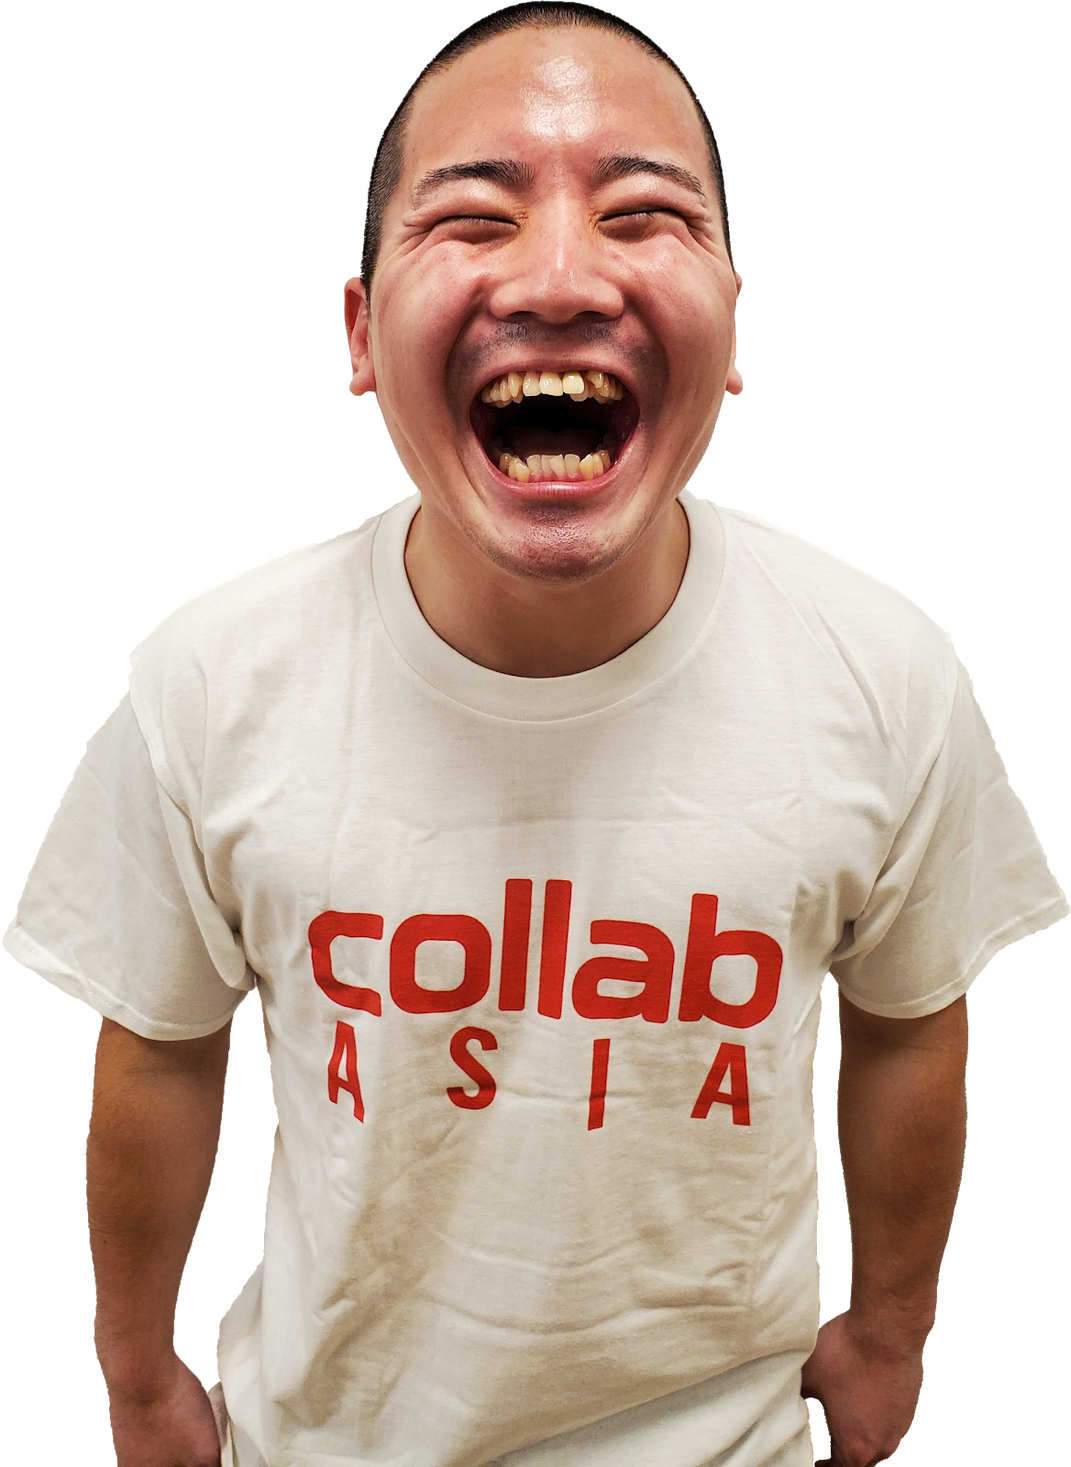 Collab Japan所属のクリエーターじゅんや、youtubeチャンネル登録者数が日本人として初の2 000万人を突破｜collab Japan 株式会社のプレスリリース